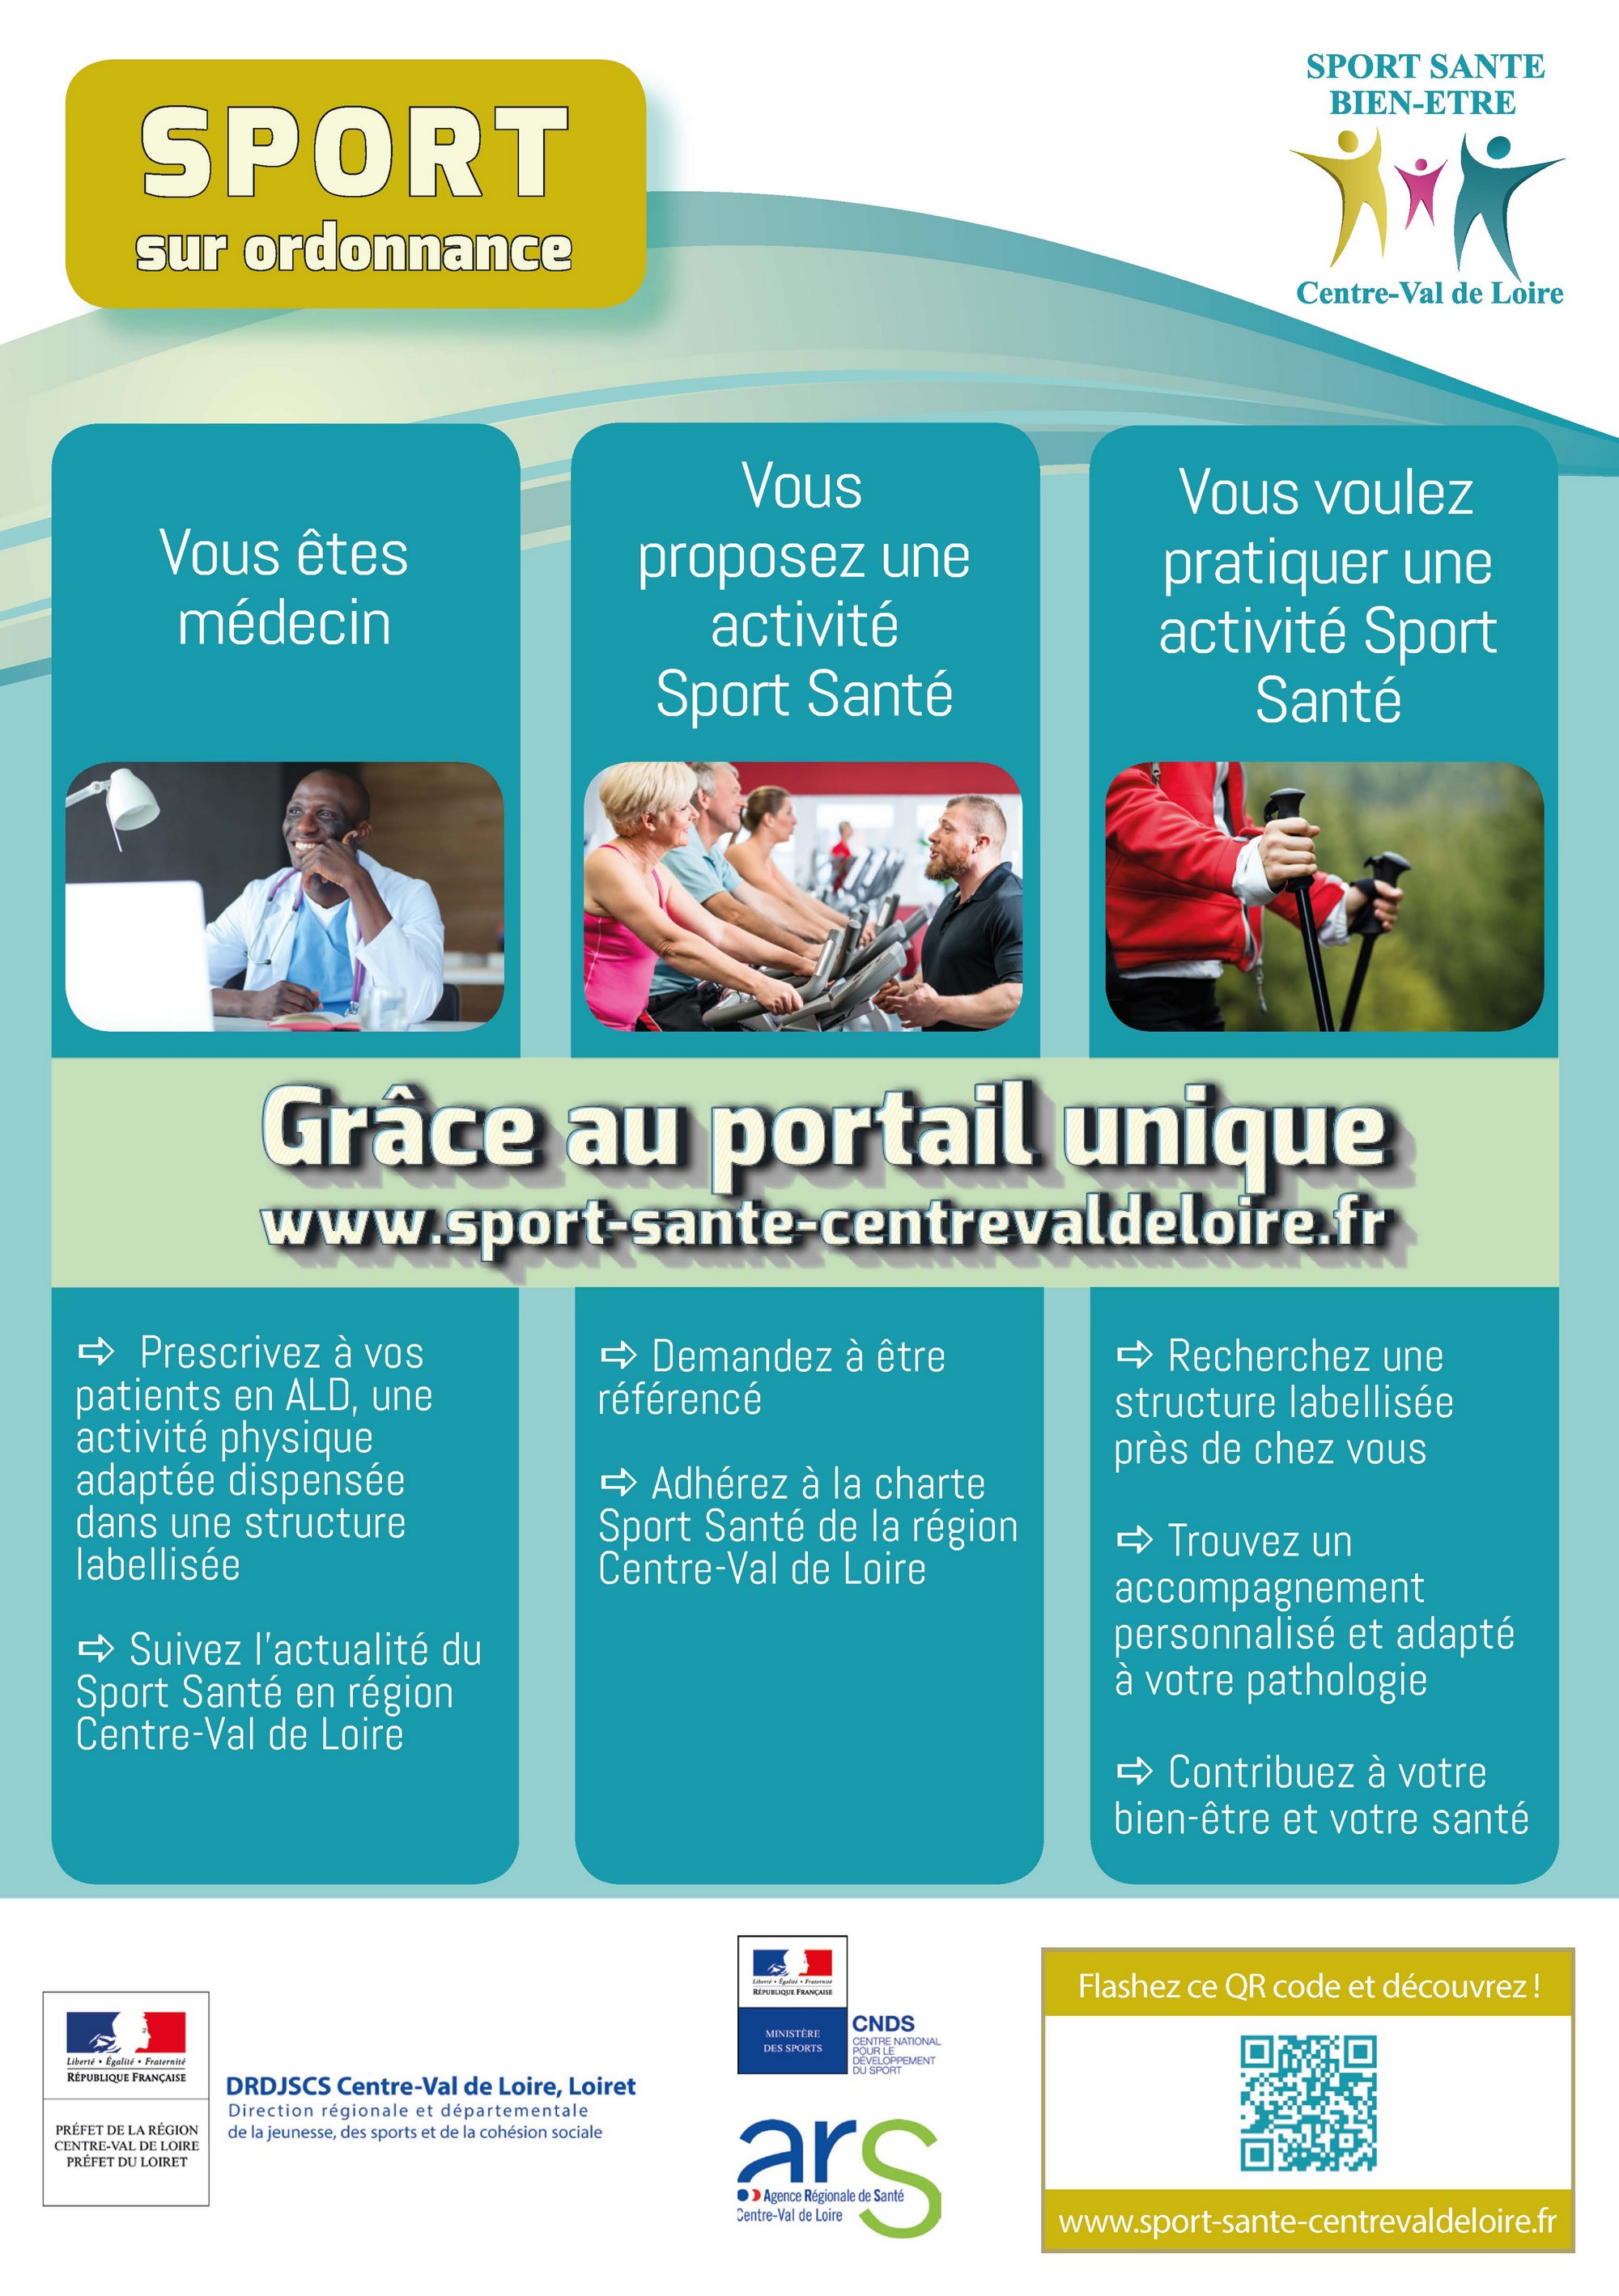 flyer Sport Santé Bien être CVL Page 1 2000